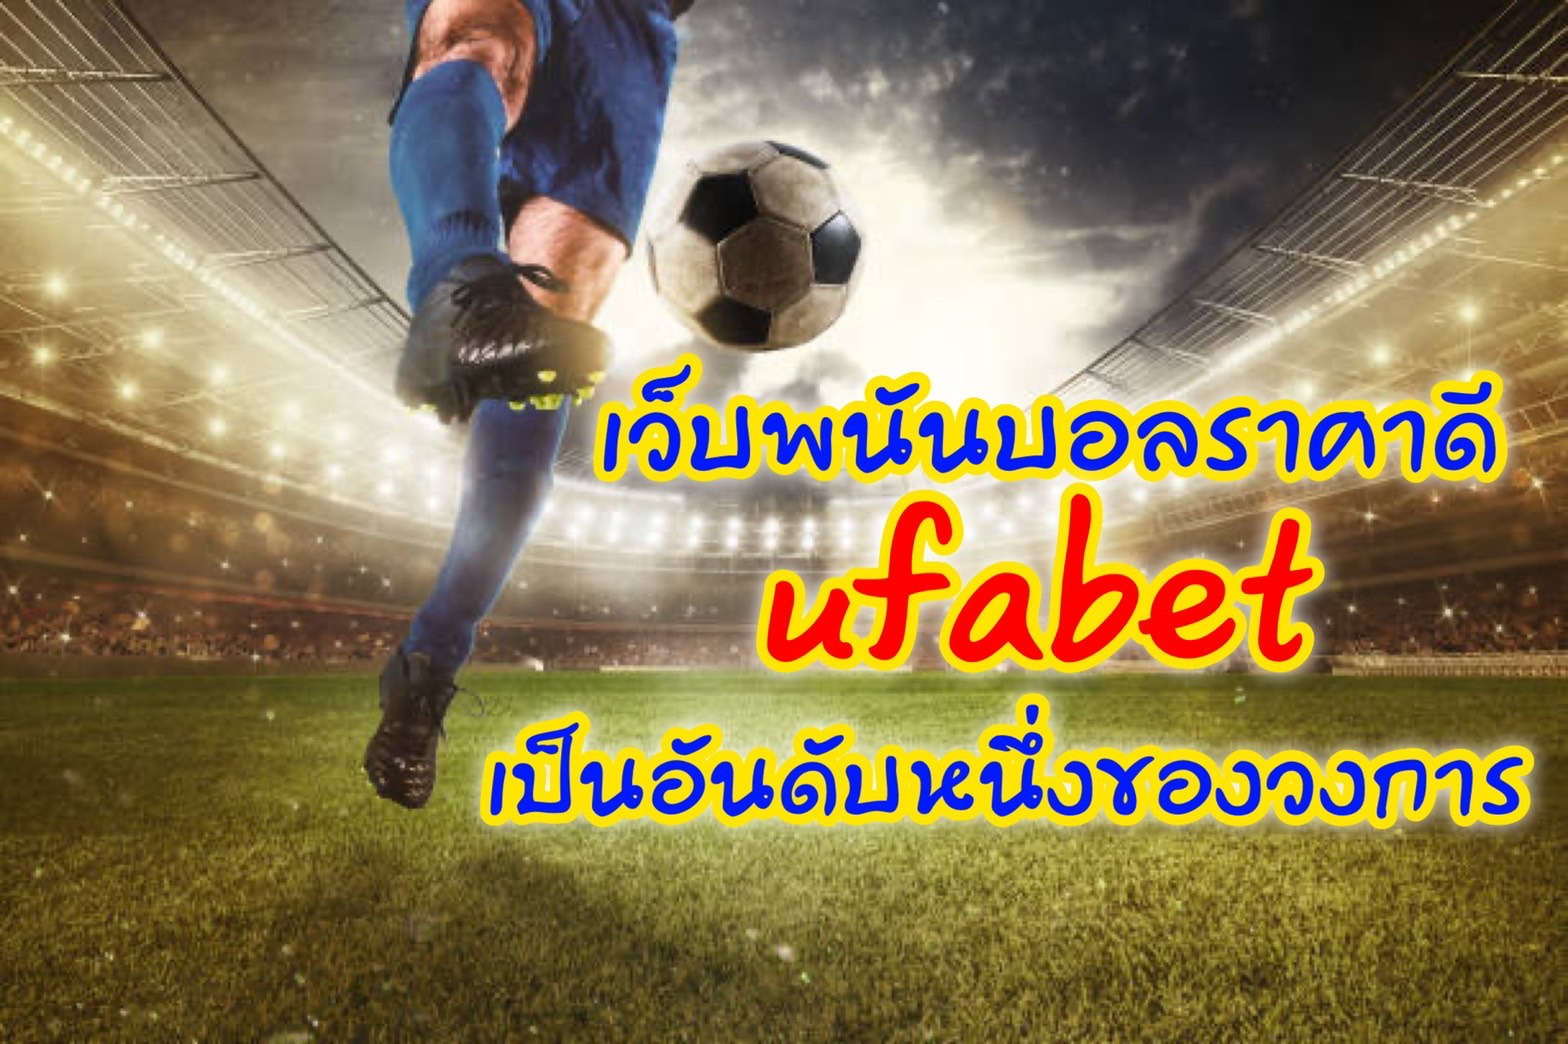 เว็บพนันบอล ราคาดี ufabet เป็นอันดับ 1 ของวงการ